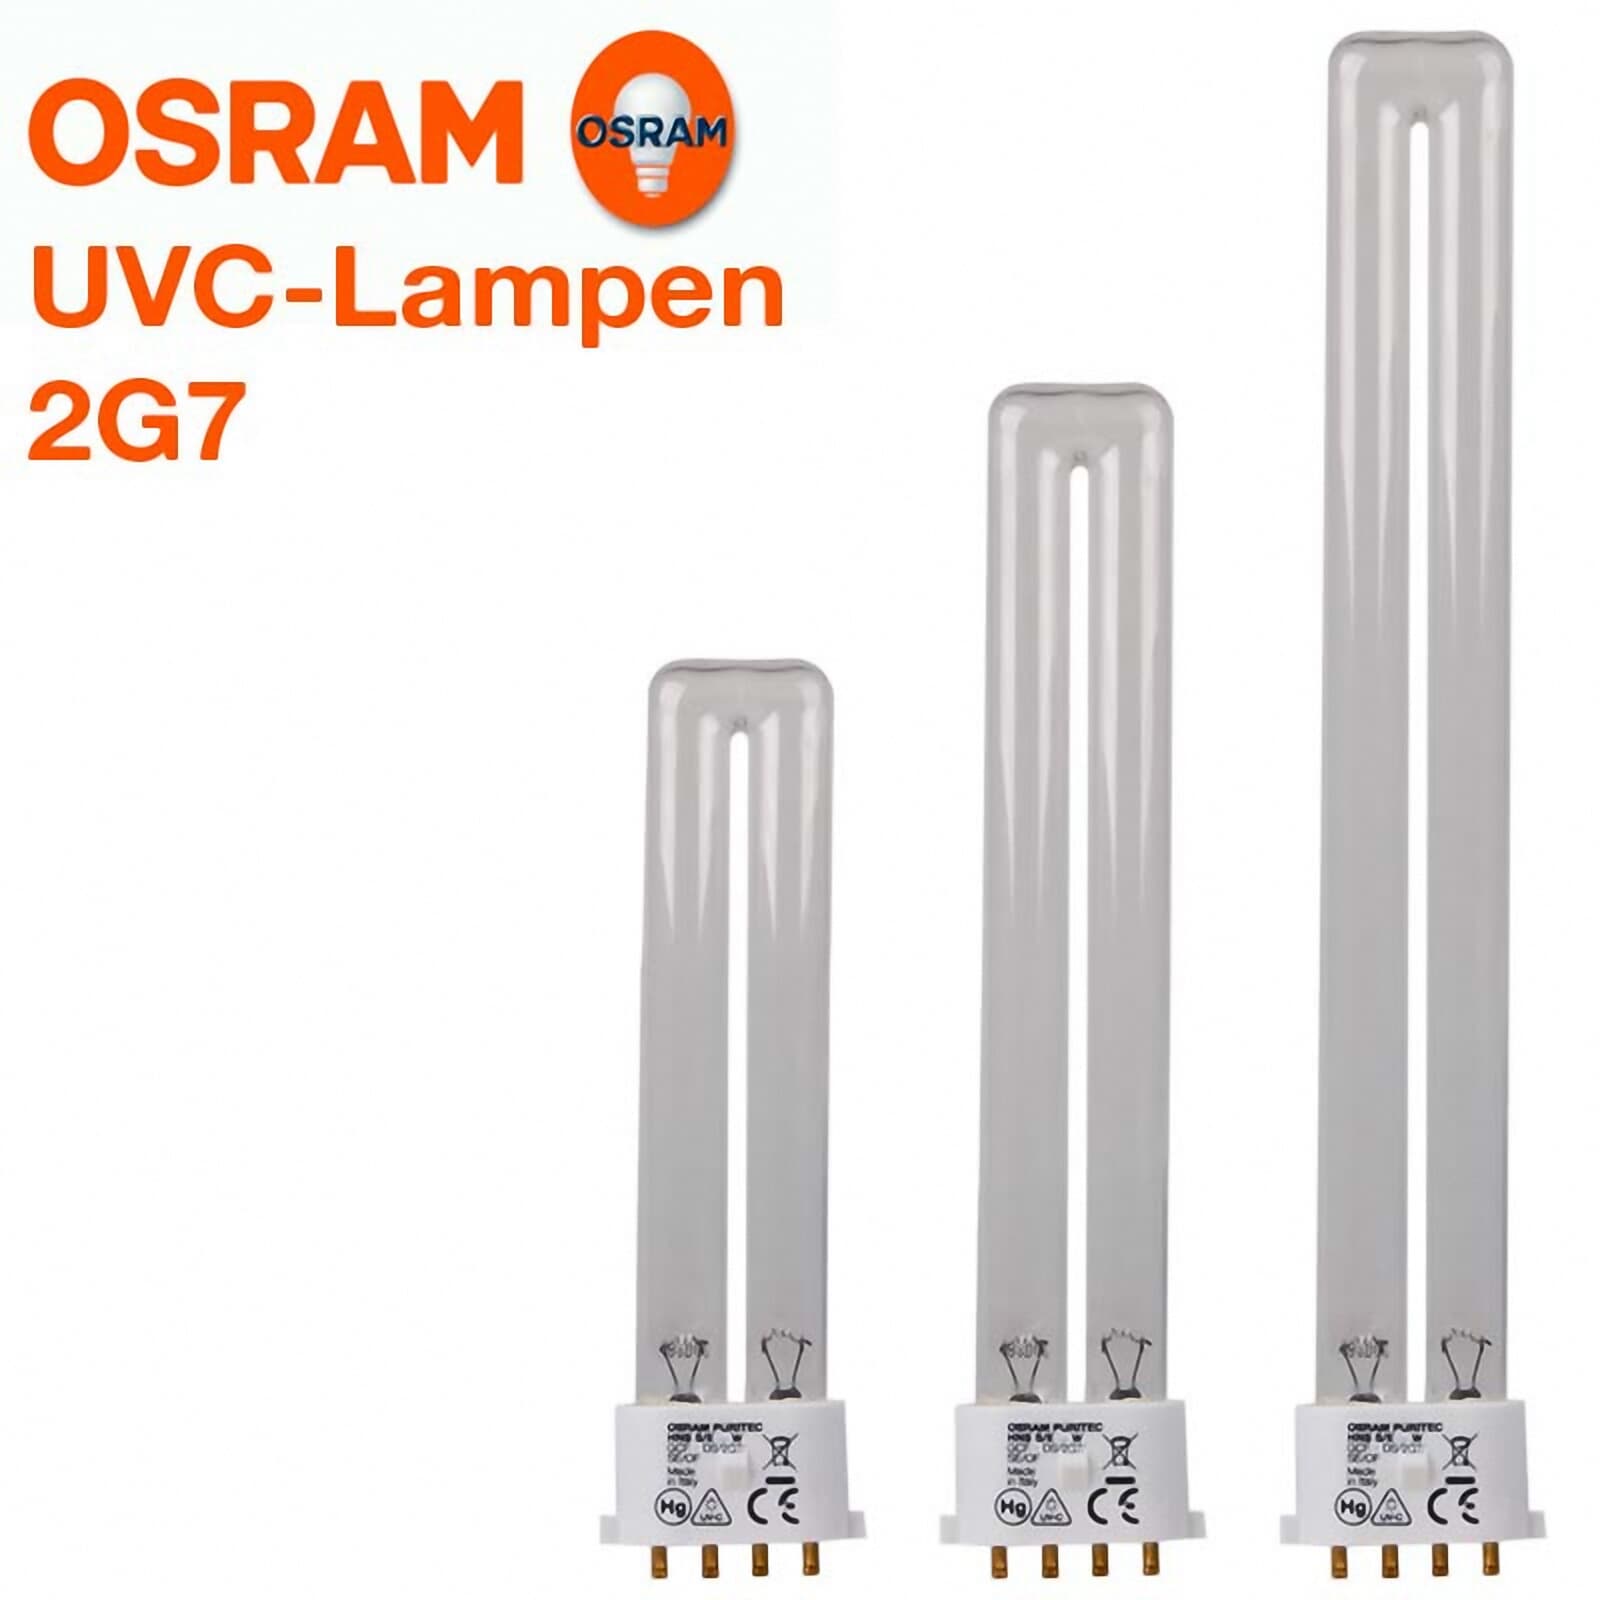 OSRAM Puritec HNS-S/E UV-C Lampe 2G7 Teich Algen Entkeimung 7 9 11 Watt UVC 